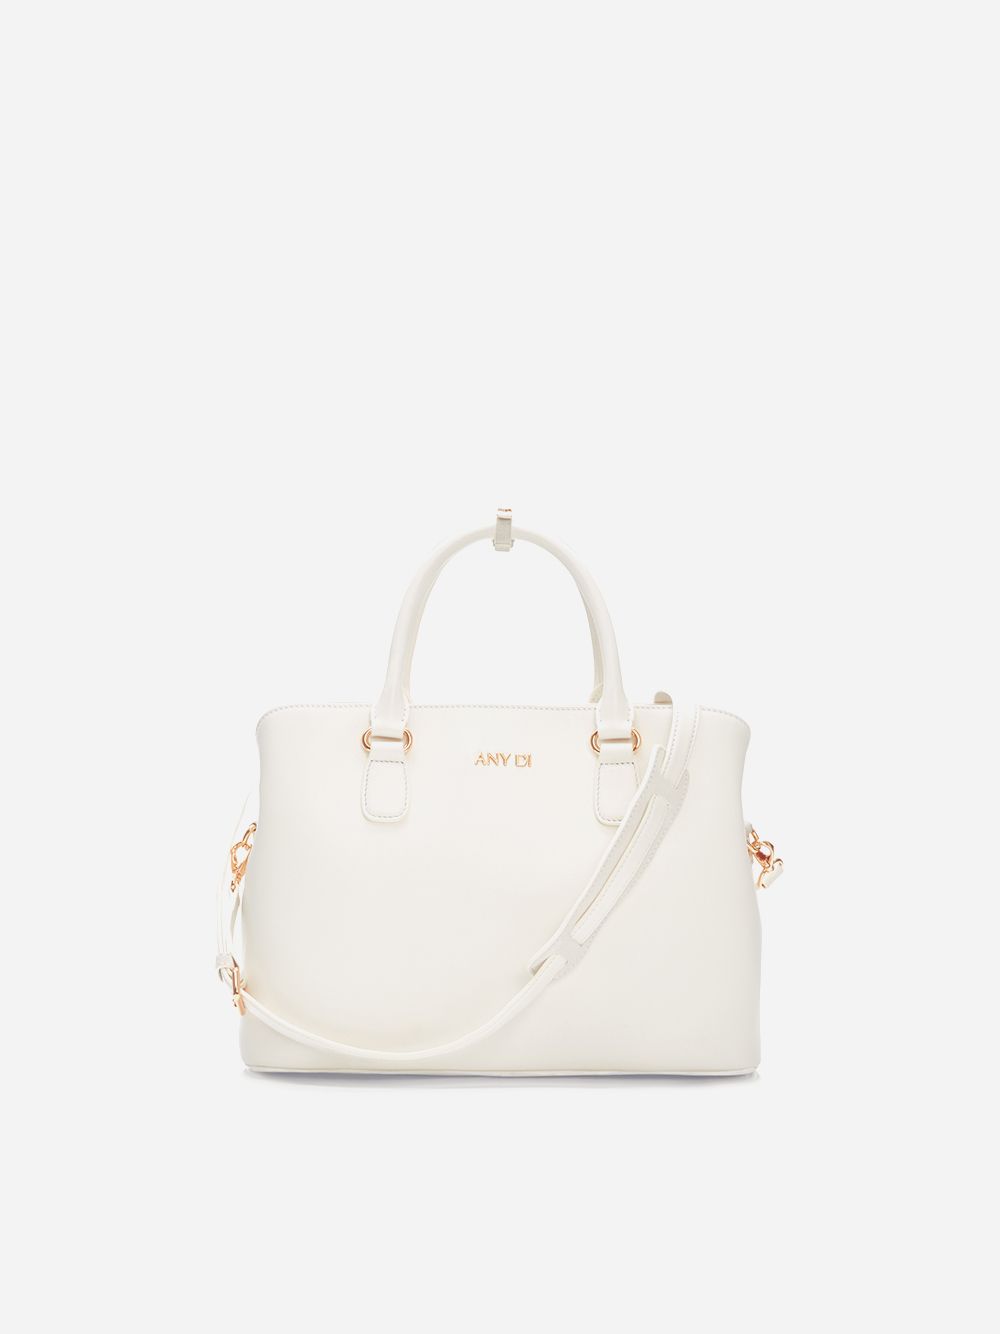 White Bag | Any Di 